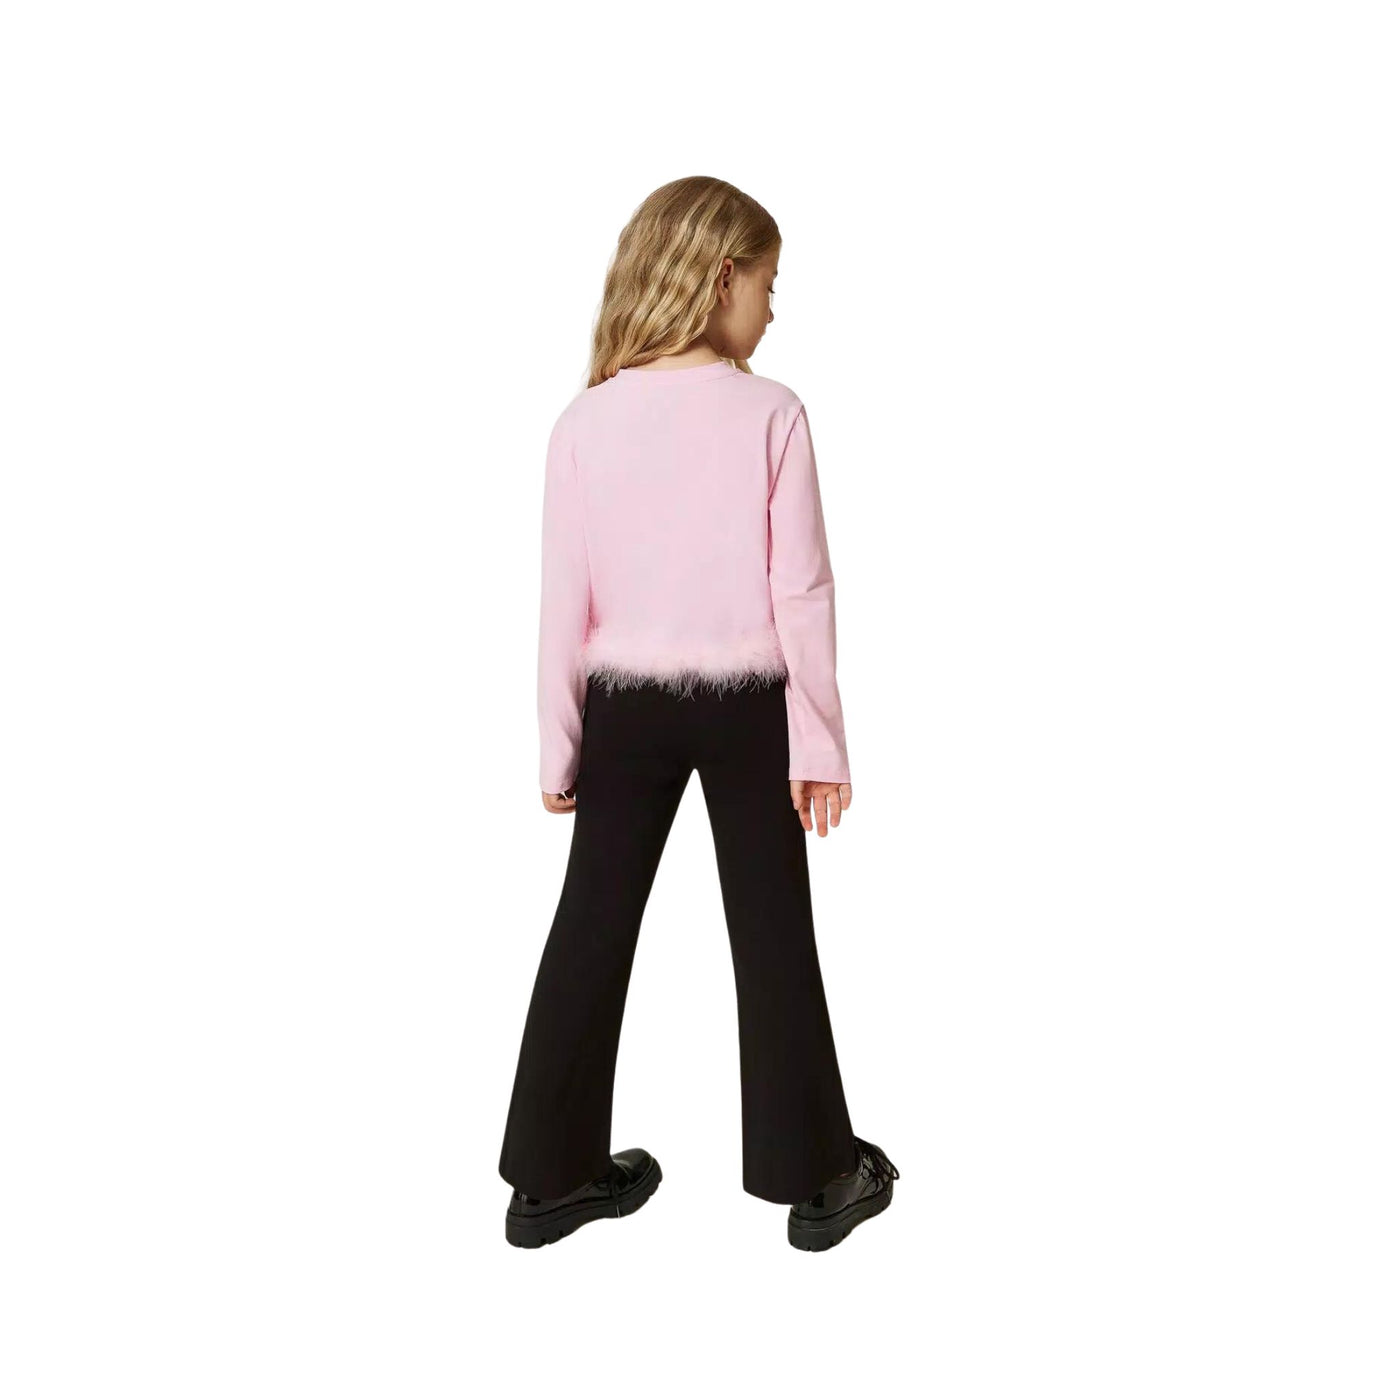 Pantalone da bambina nero firmato Twinset vista retro su modella